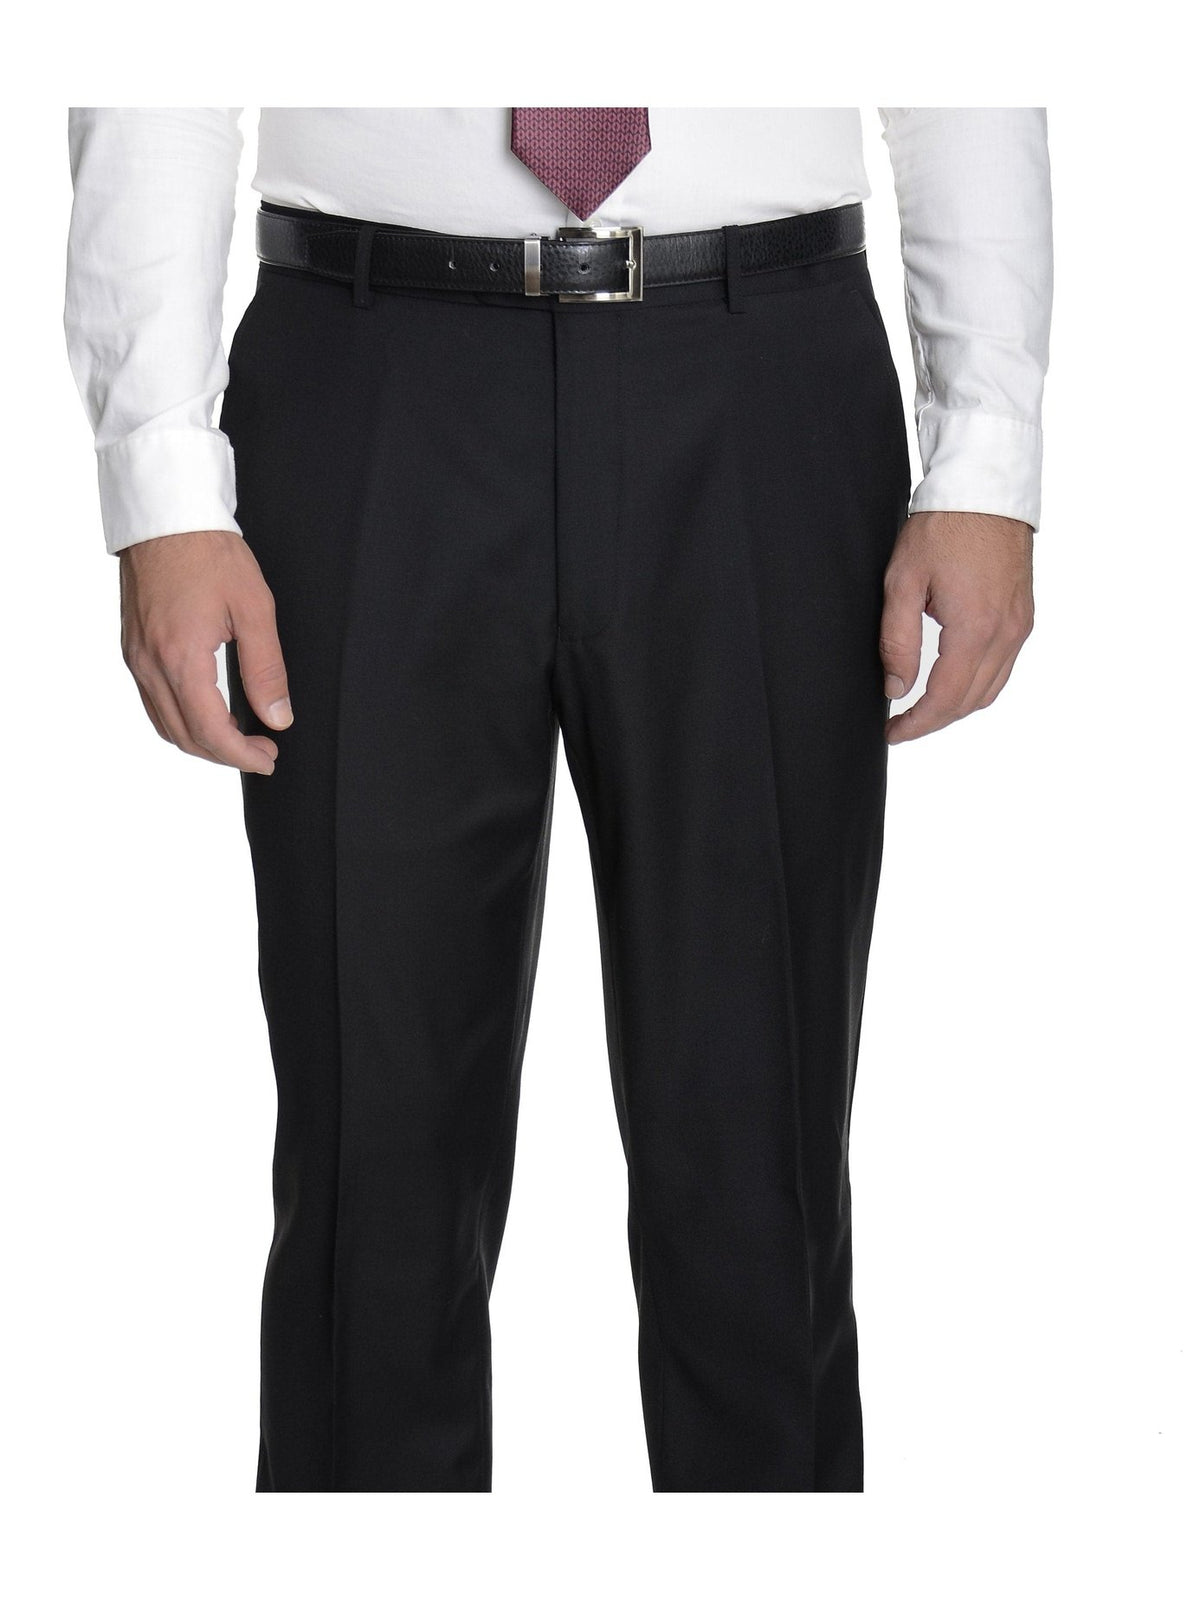 Raphael Mens Classic Fit Solid Black Flat Front Wool Dress Pants - The Suit Depot